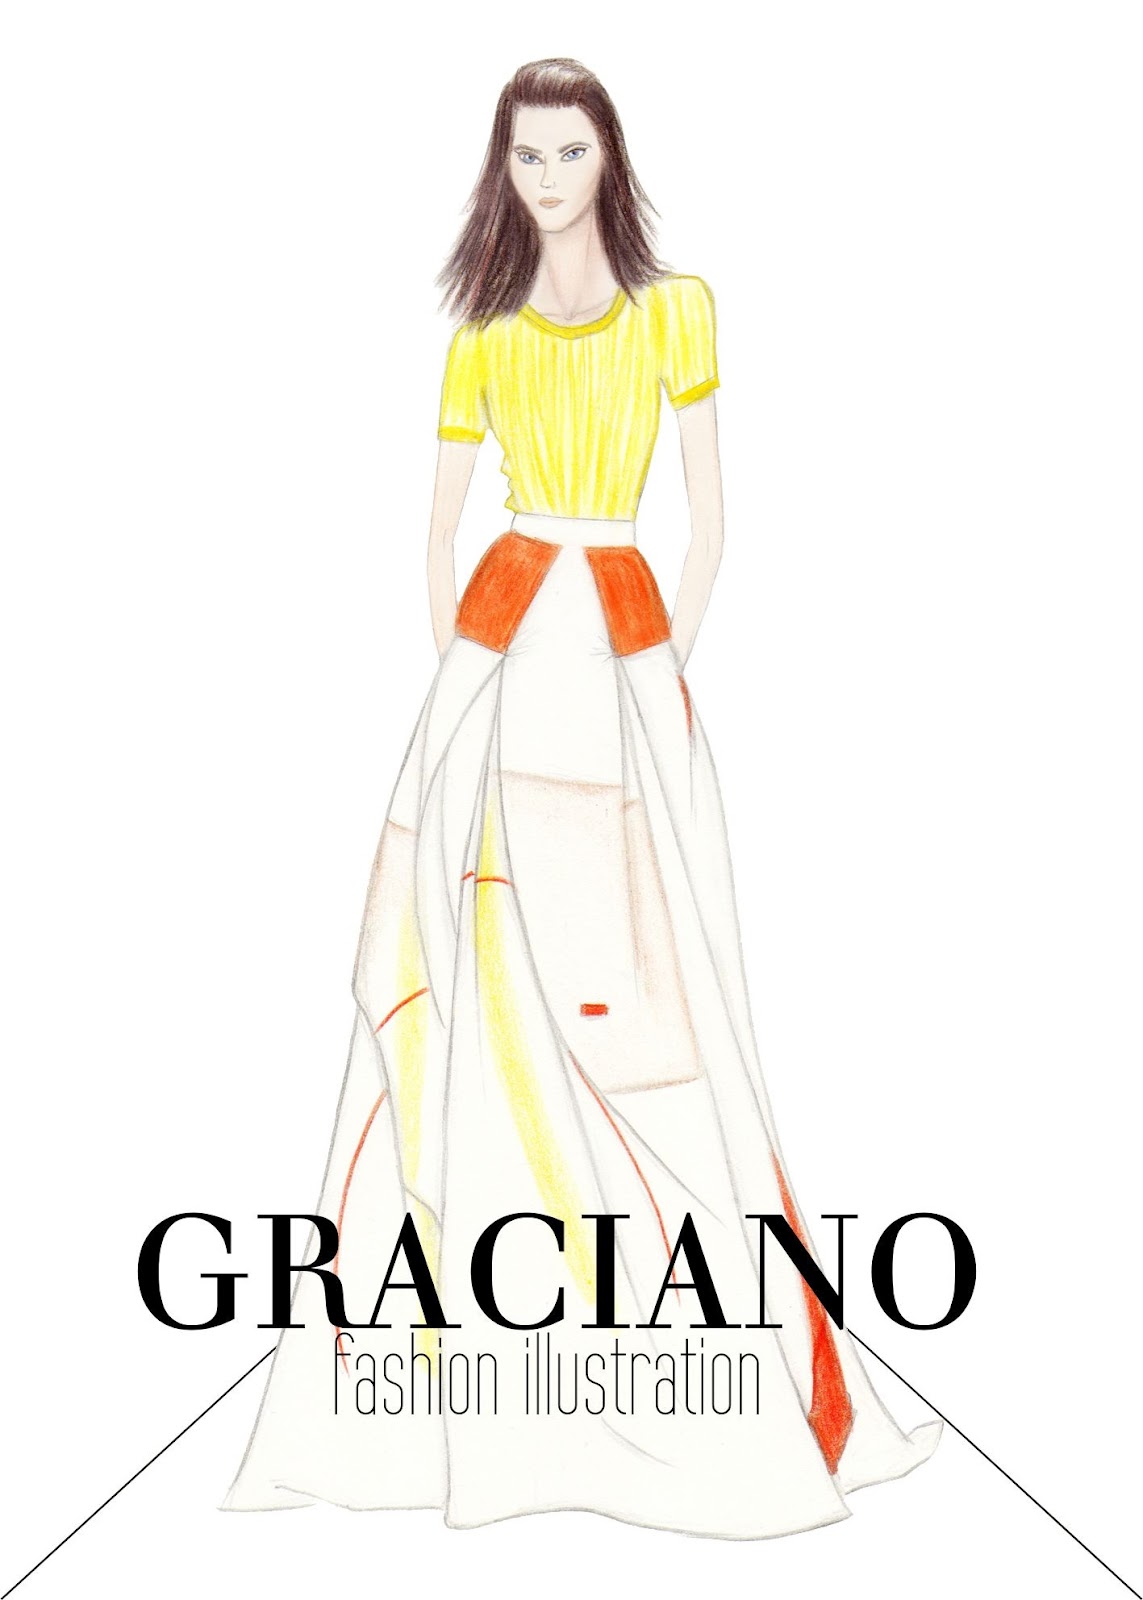 GRACIANO fashion illustration: Carolina Herrera S/S 2013 #NYFW